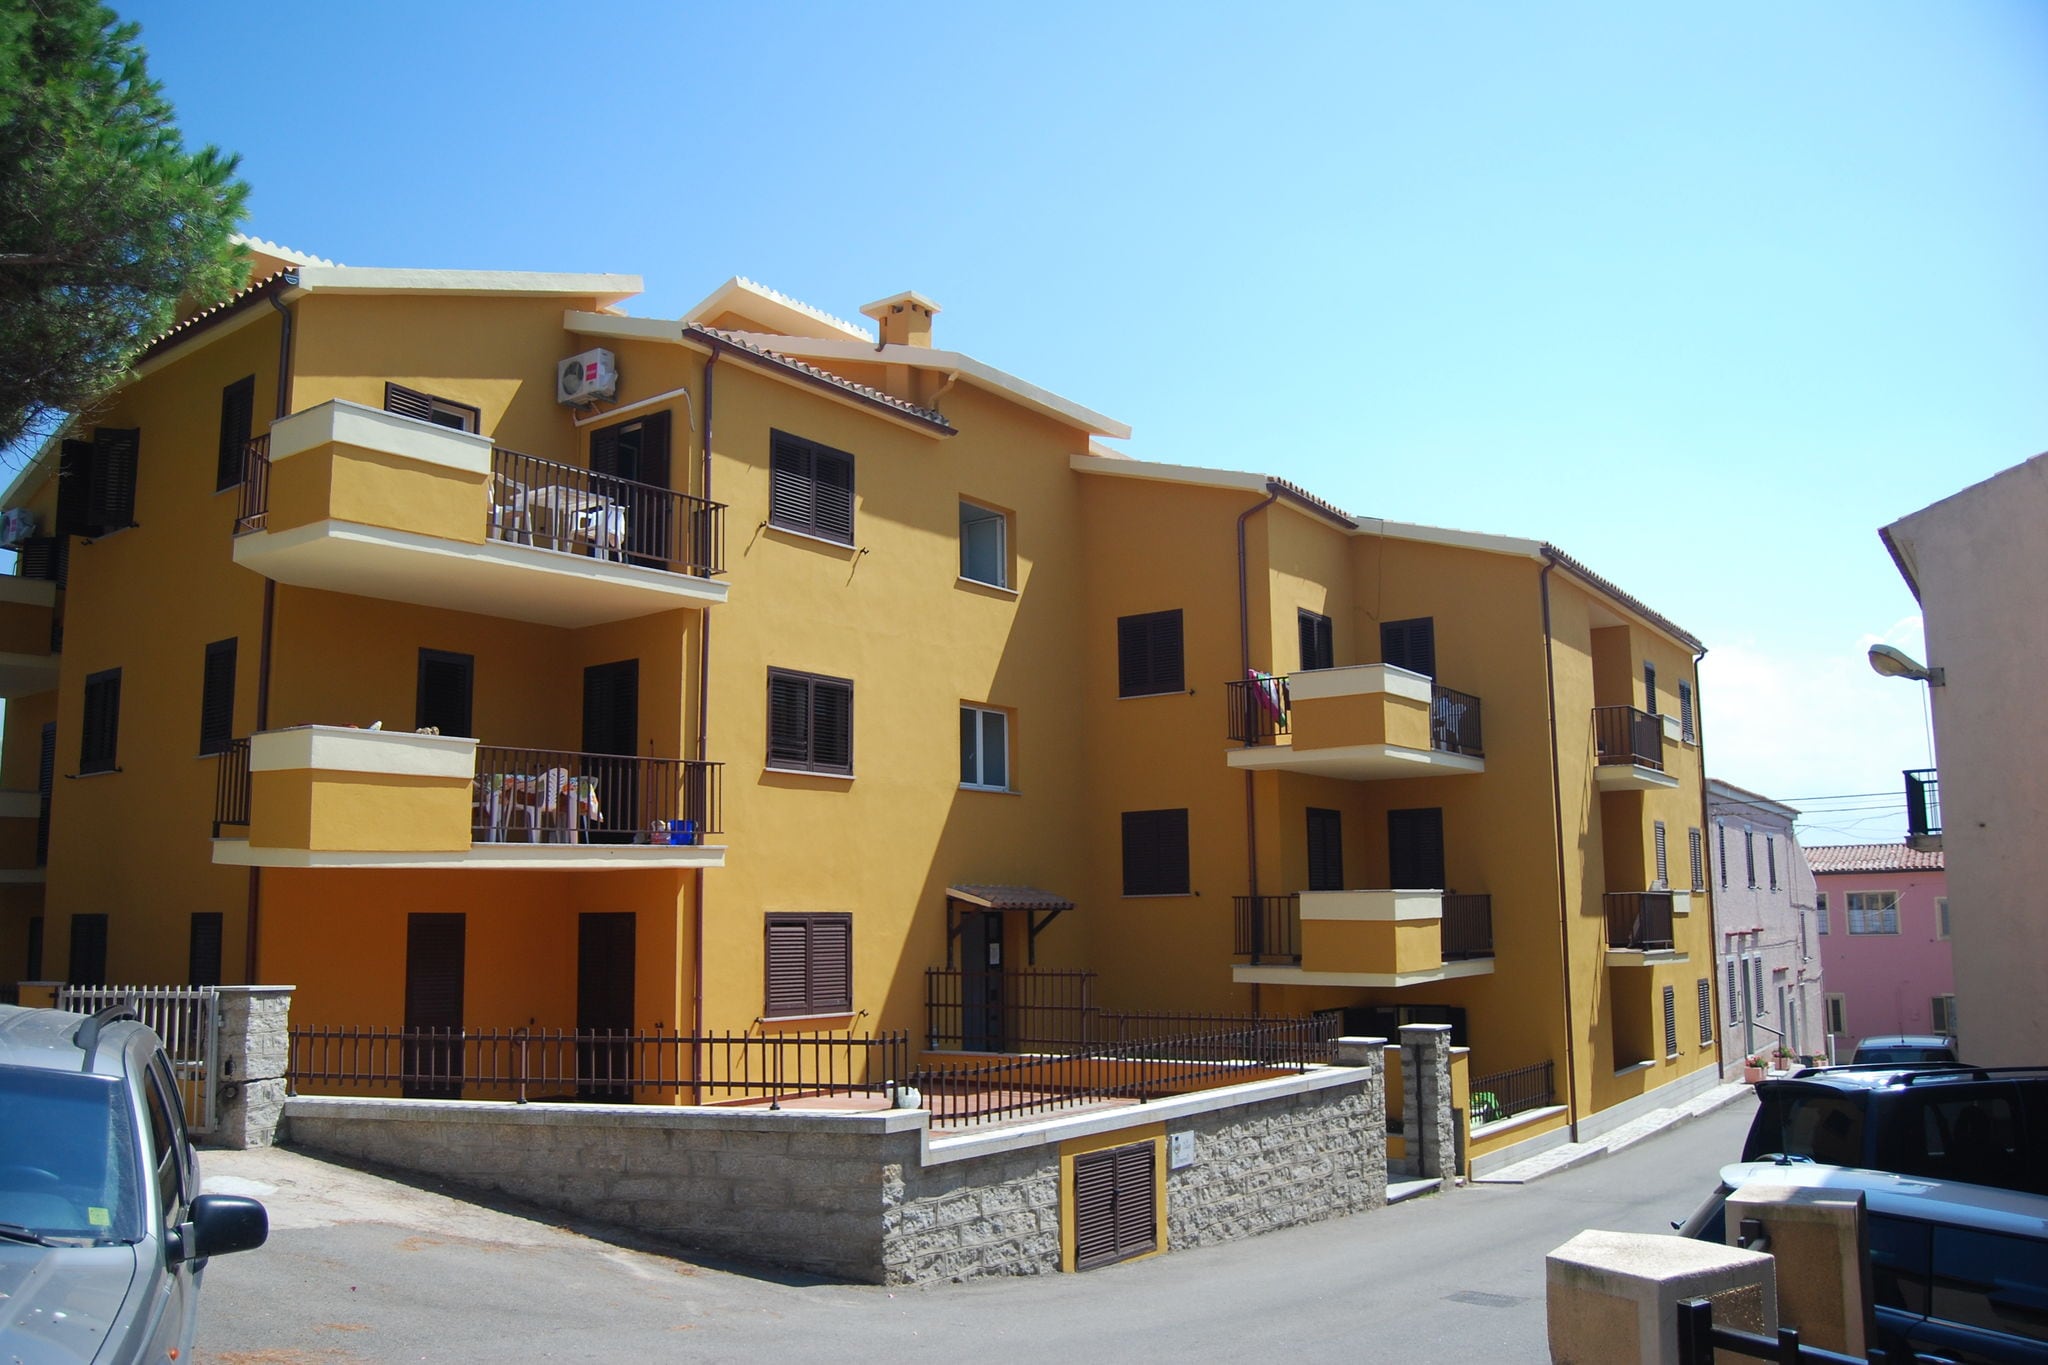 Appartement, à 500 m de la mer à Santa Teresa Gallura